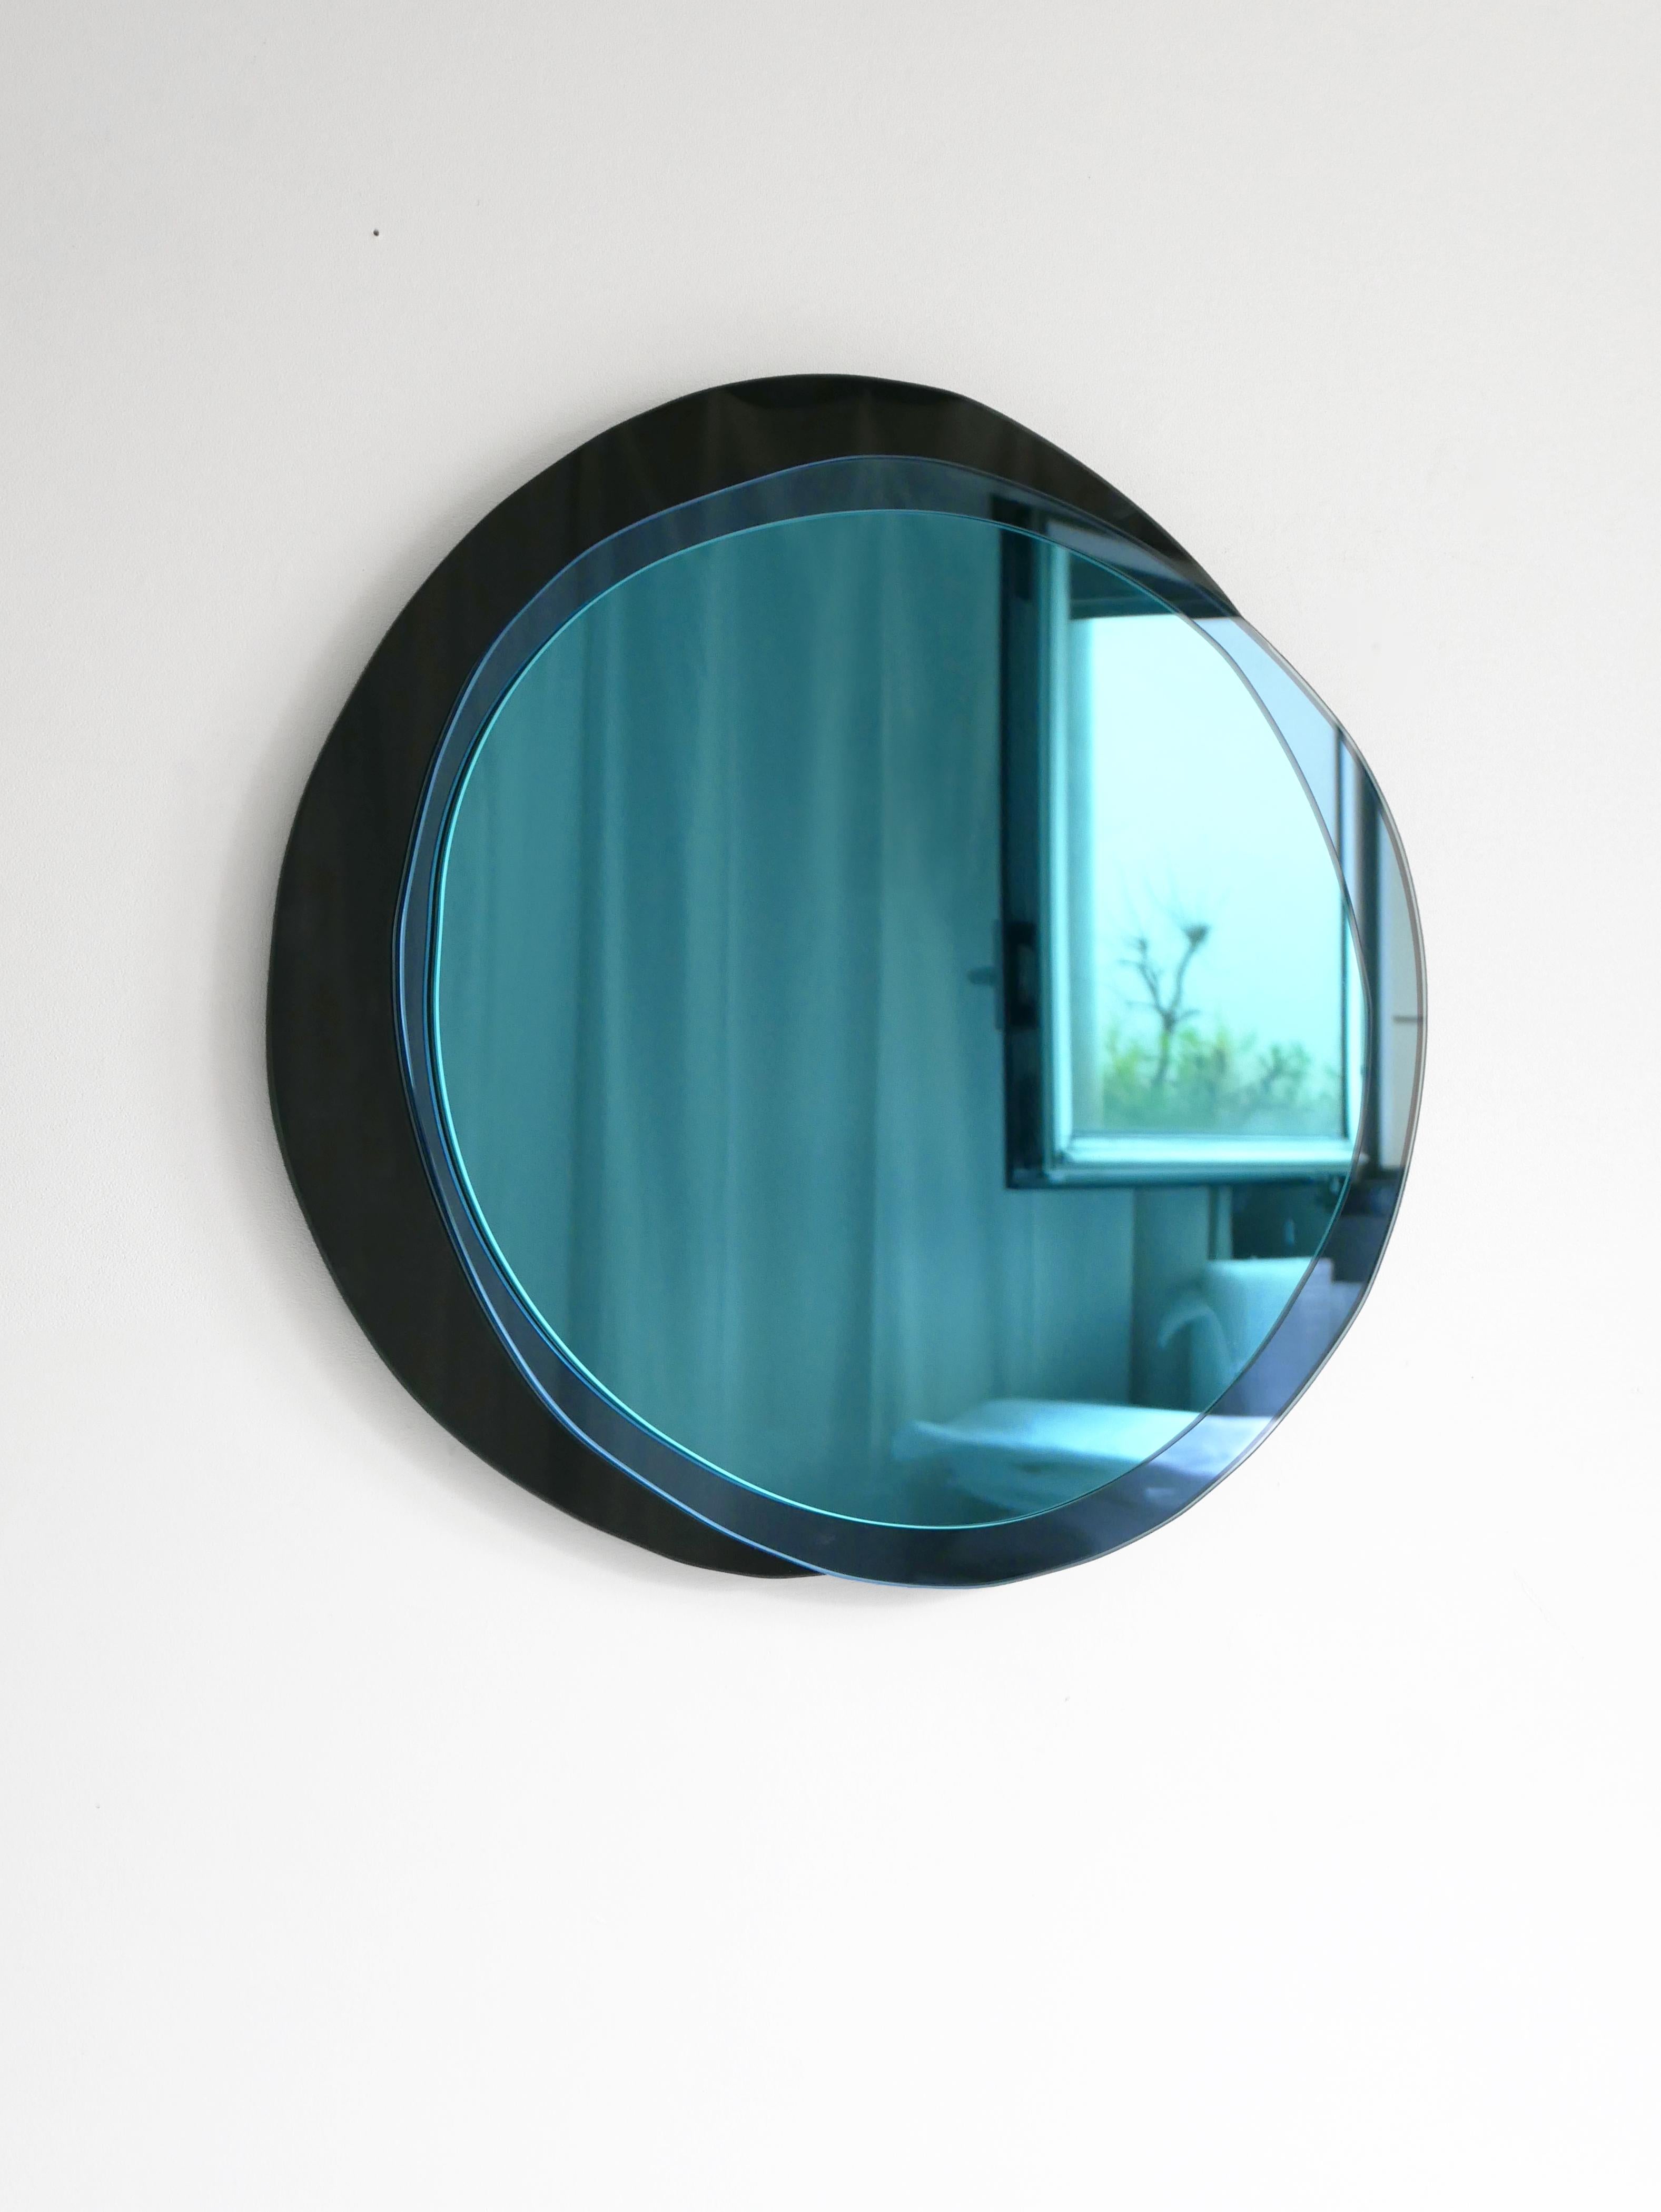 Kleiner handgeformter Spiegel Lunar, Laurene Guarneri
Limitierte Ausgabe.
Handgefertigt.
MATERIALIEN: Himmelblau gefärbter Spiegel, dunkelblau gefärbter Spiegel, dunkel gefärbter Spiegel.
Abmessungen: 45 x 45 cm

Laurène Guarneri ist eine in Paris